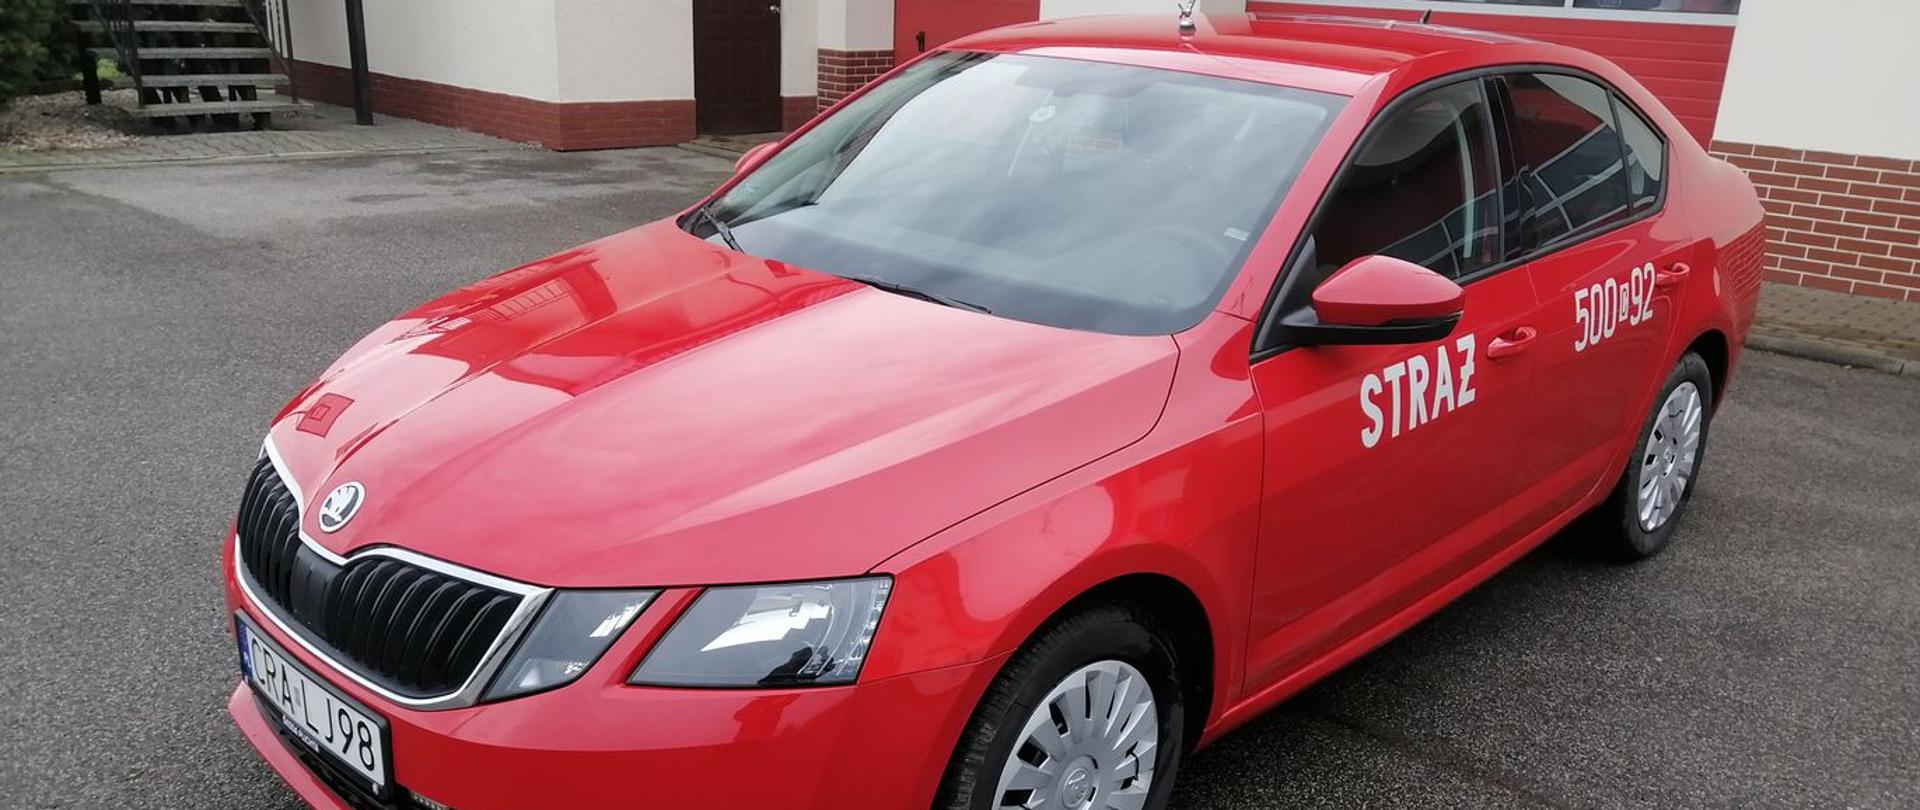 Zdjęcie przedstawia czerwony samochód SLOP Skoda Octavia na tle garażu KP PSP.